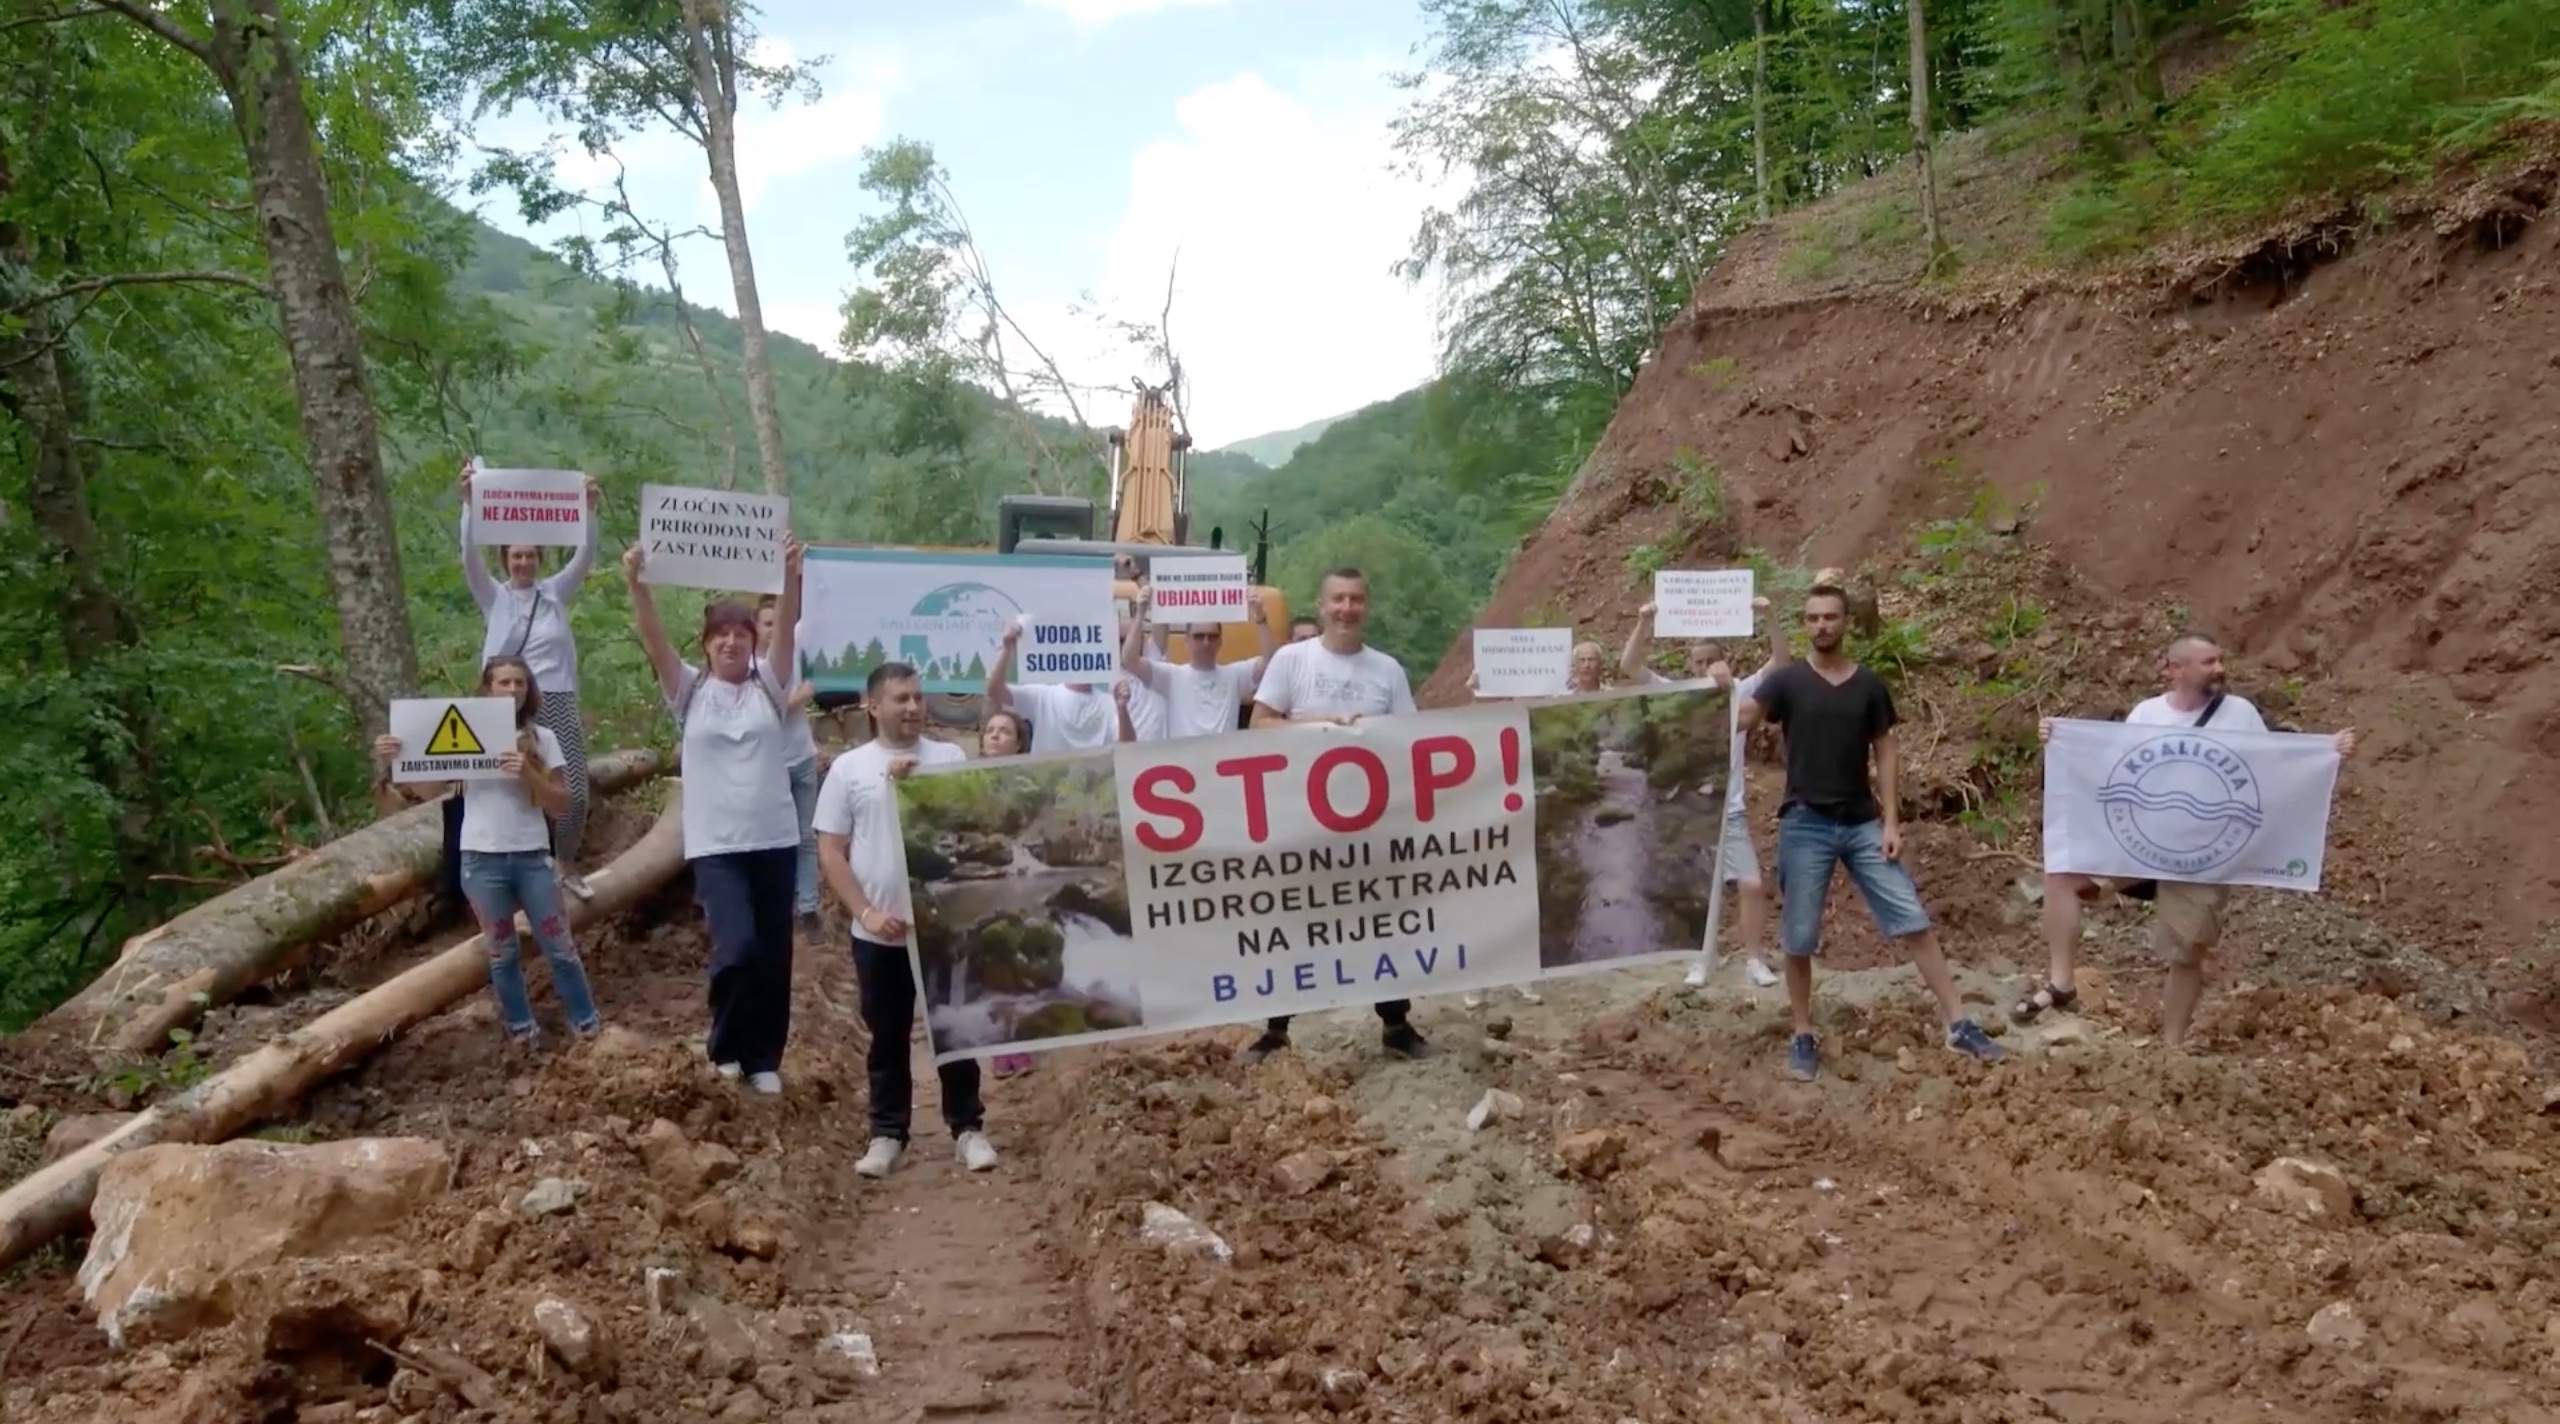 Youtube Screenshot 2020-12-30 Udruženje Bjelava - Građani poručili da ilegalna gradnja MHE na rijeci Bjelavi mora stati